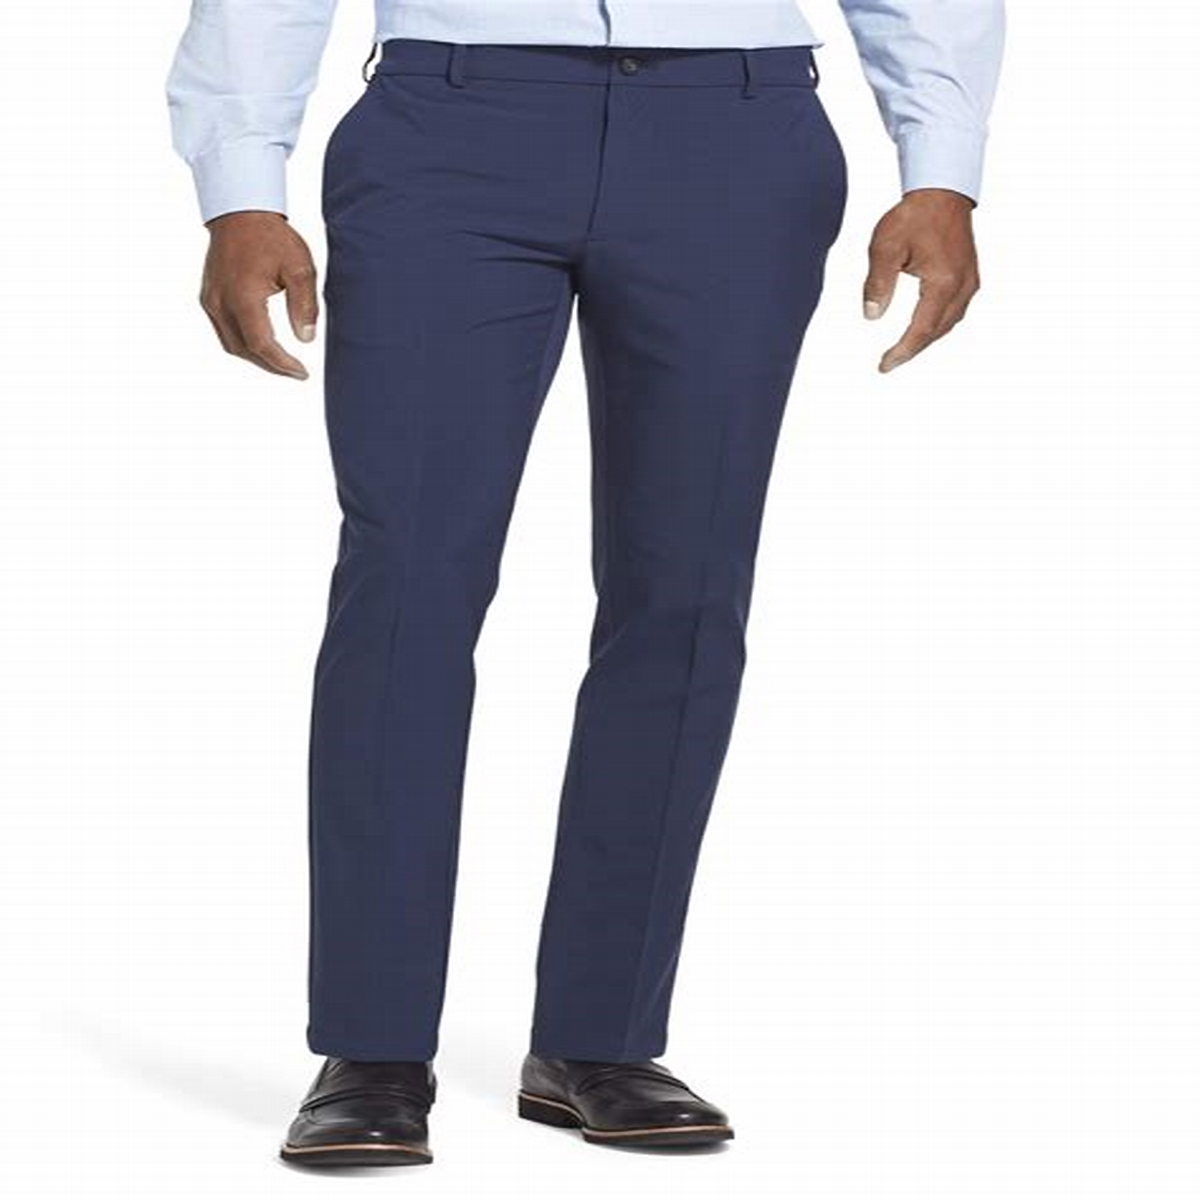 2024 Van heusen pants flex 4.1 to - hilmens.shop